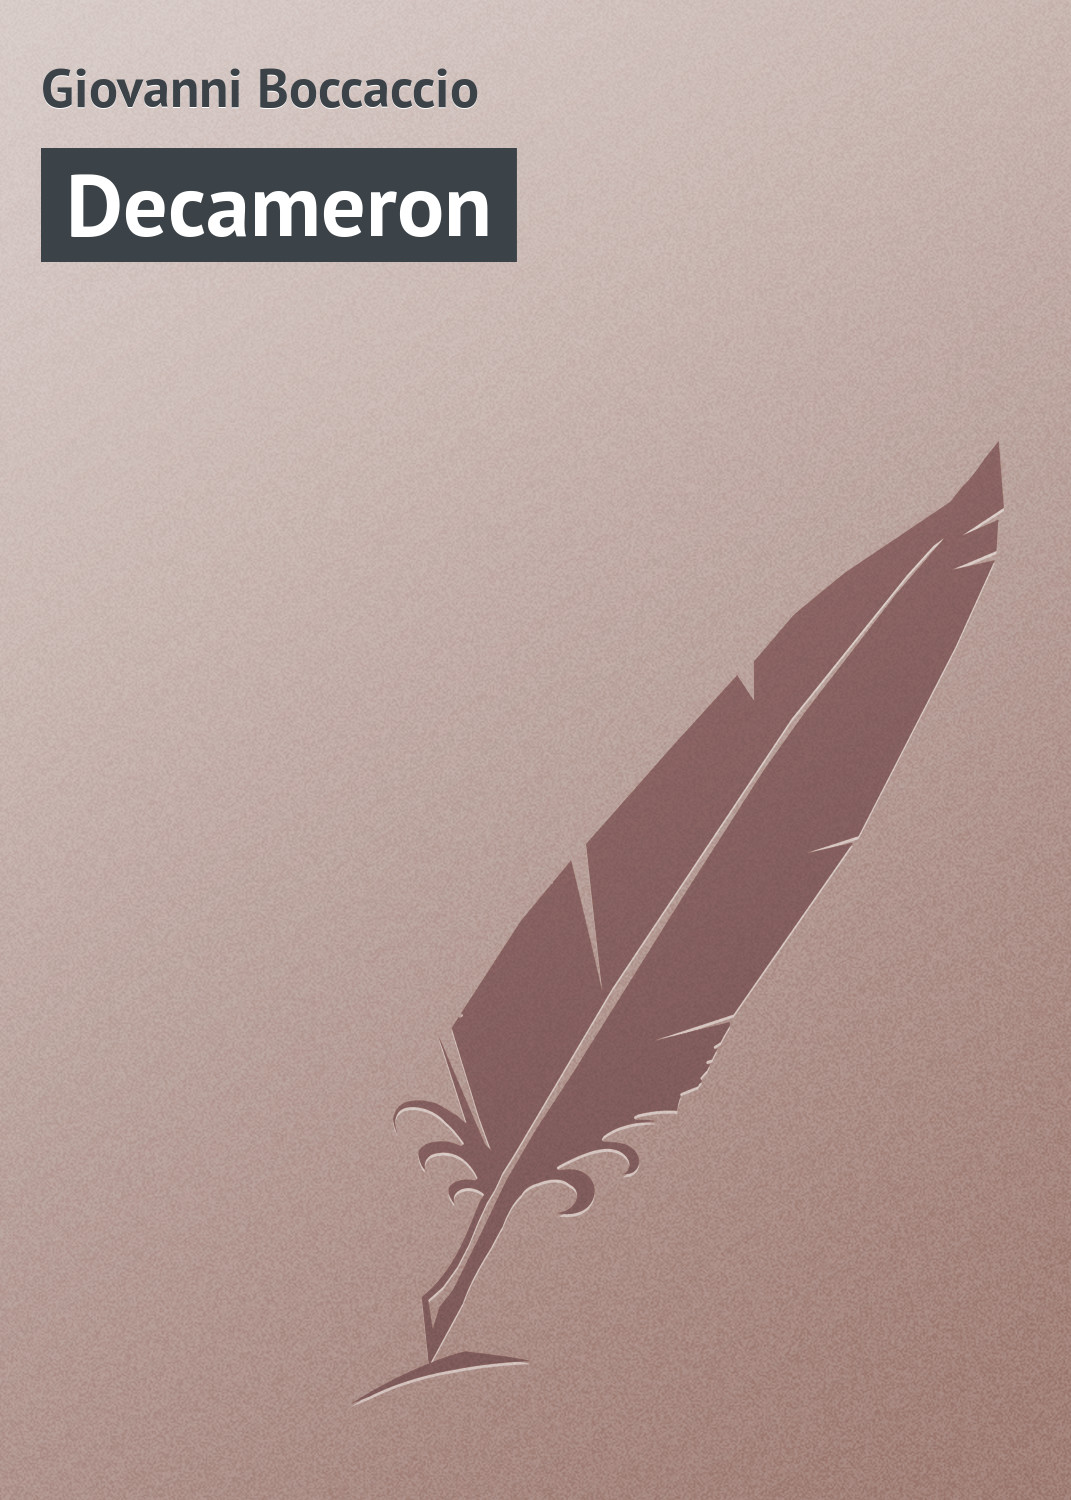 Книга Decameron из серии , созданная Giovanni Boccaccio, может относится к жанру Зарубежная старинная литература, Зарубежная классика. Стоимость электронной книги Decameron с идентификатором 21103646 составляет 5.99 руб.